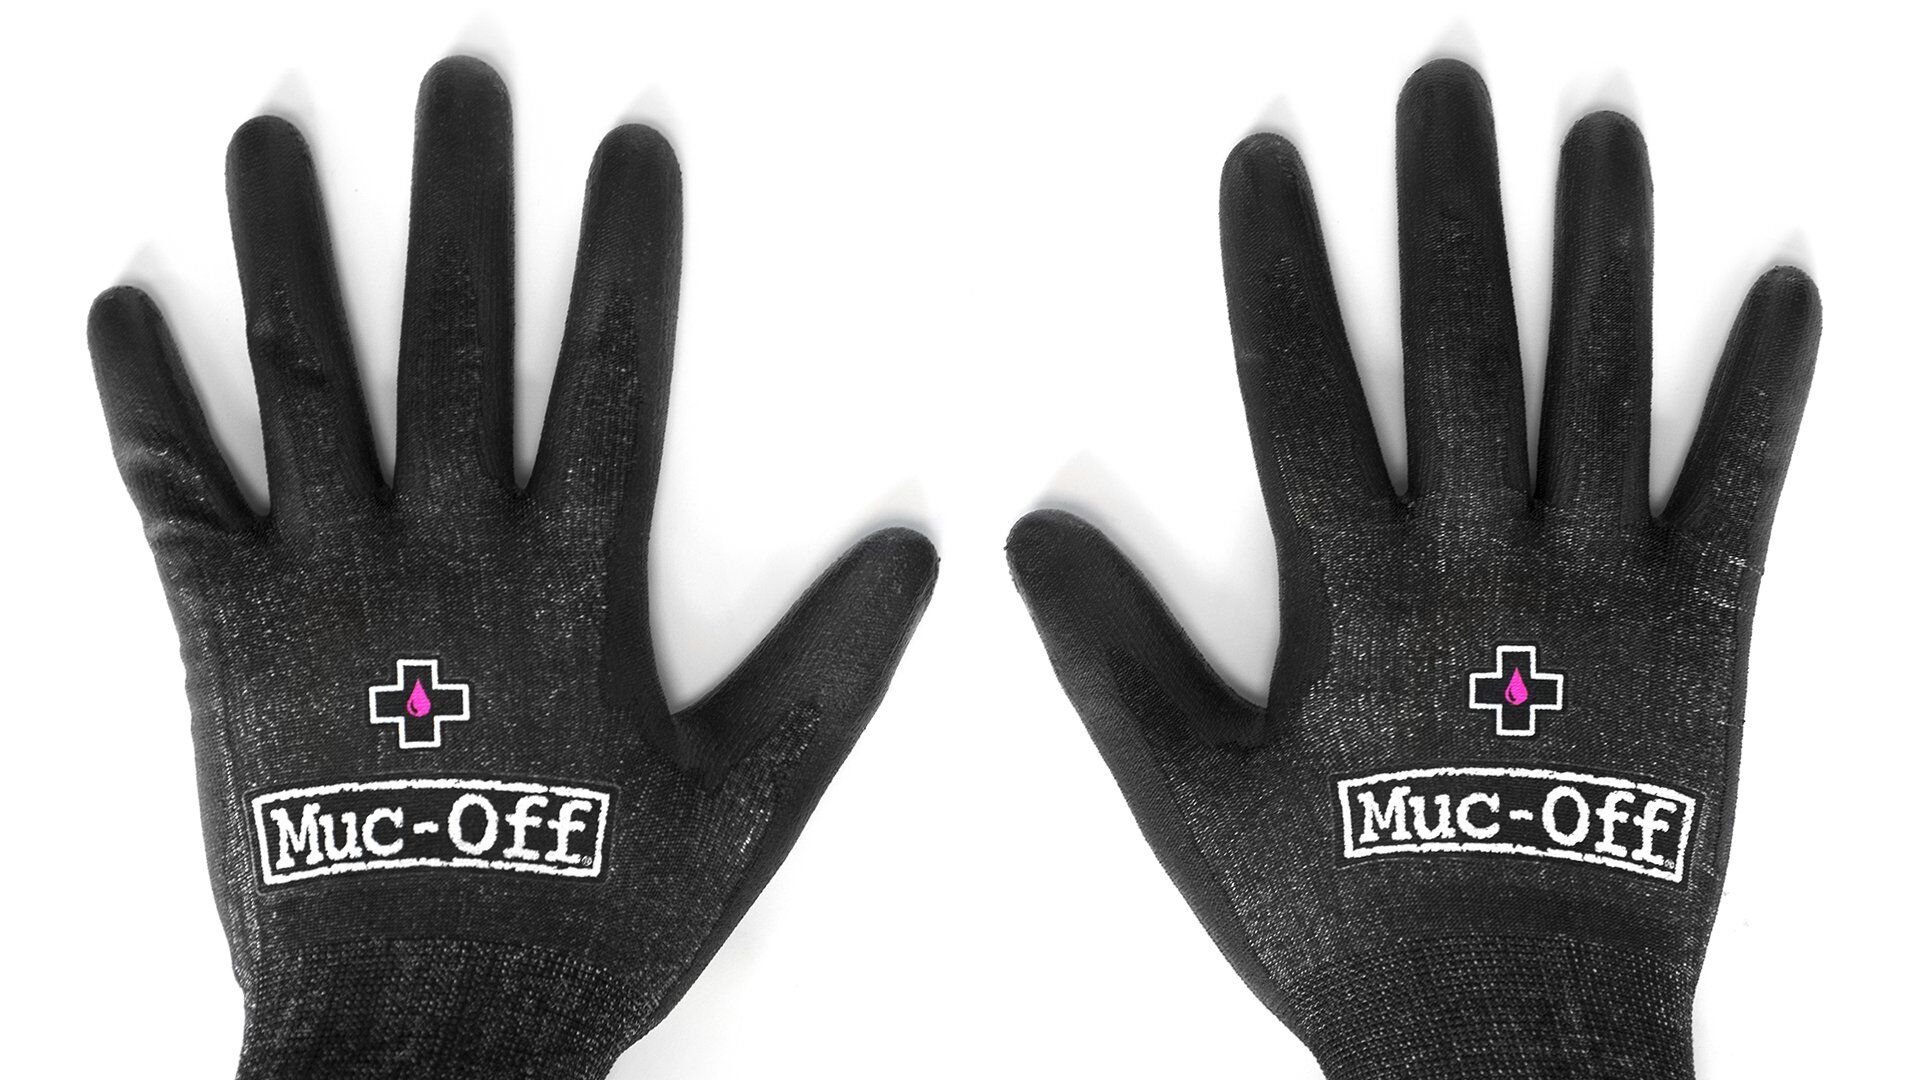 Muc-Off Mechanics Gloves - Guantes